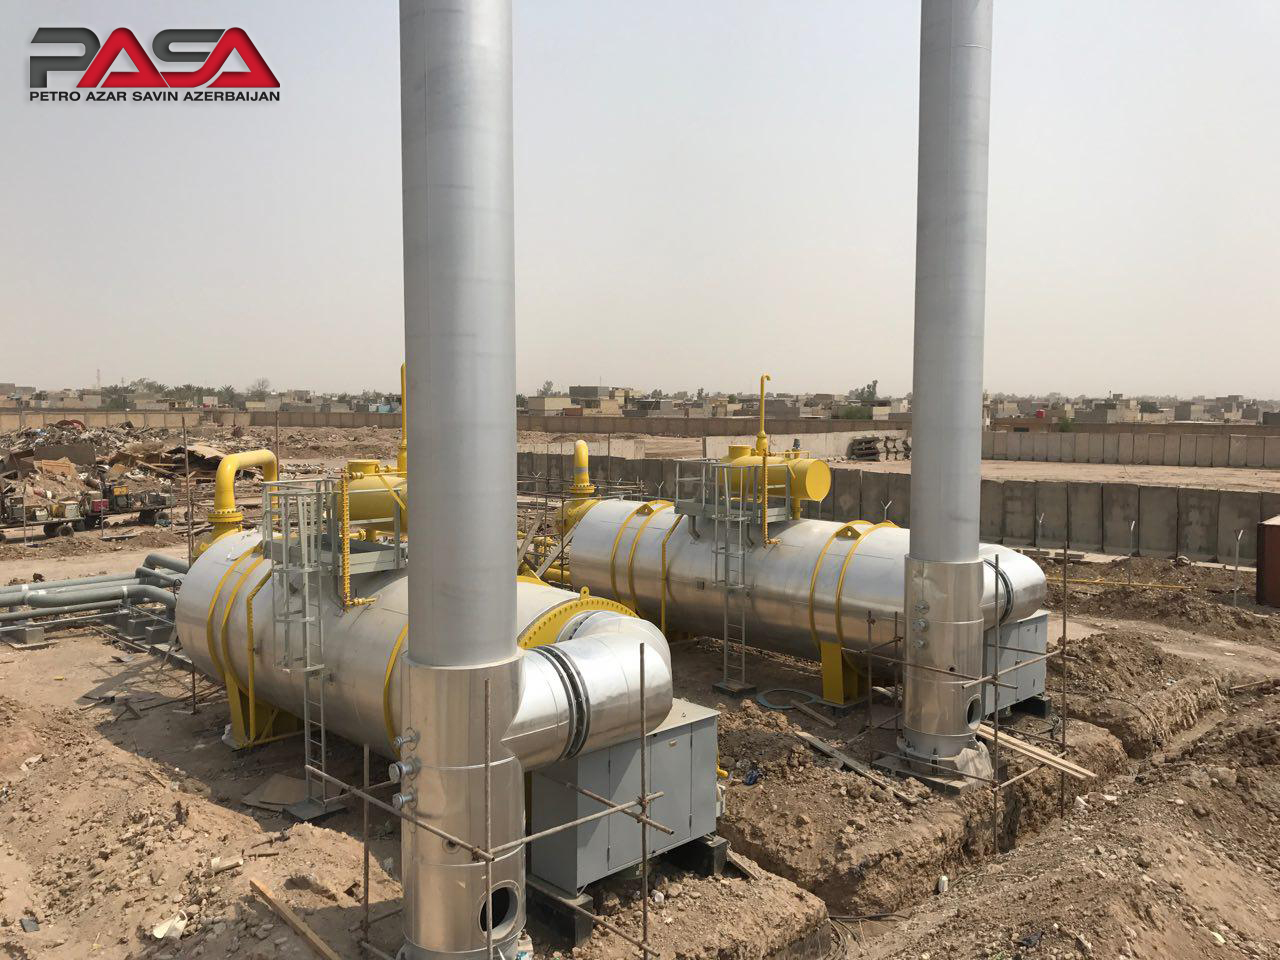  راه اندازی و بهره برداری از ایستگاه تقلیل فشار گاز (ICG) نیروگاه الصدر بغداد